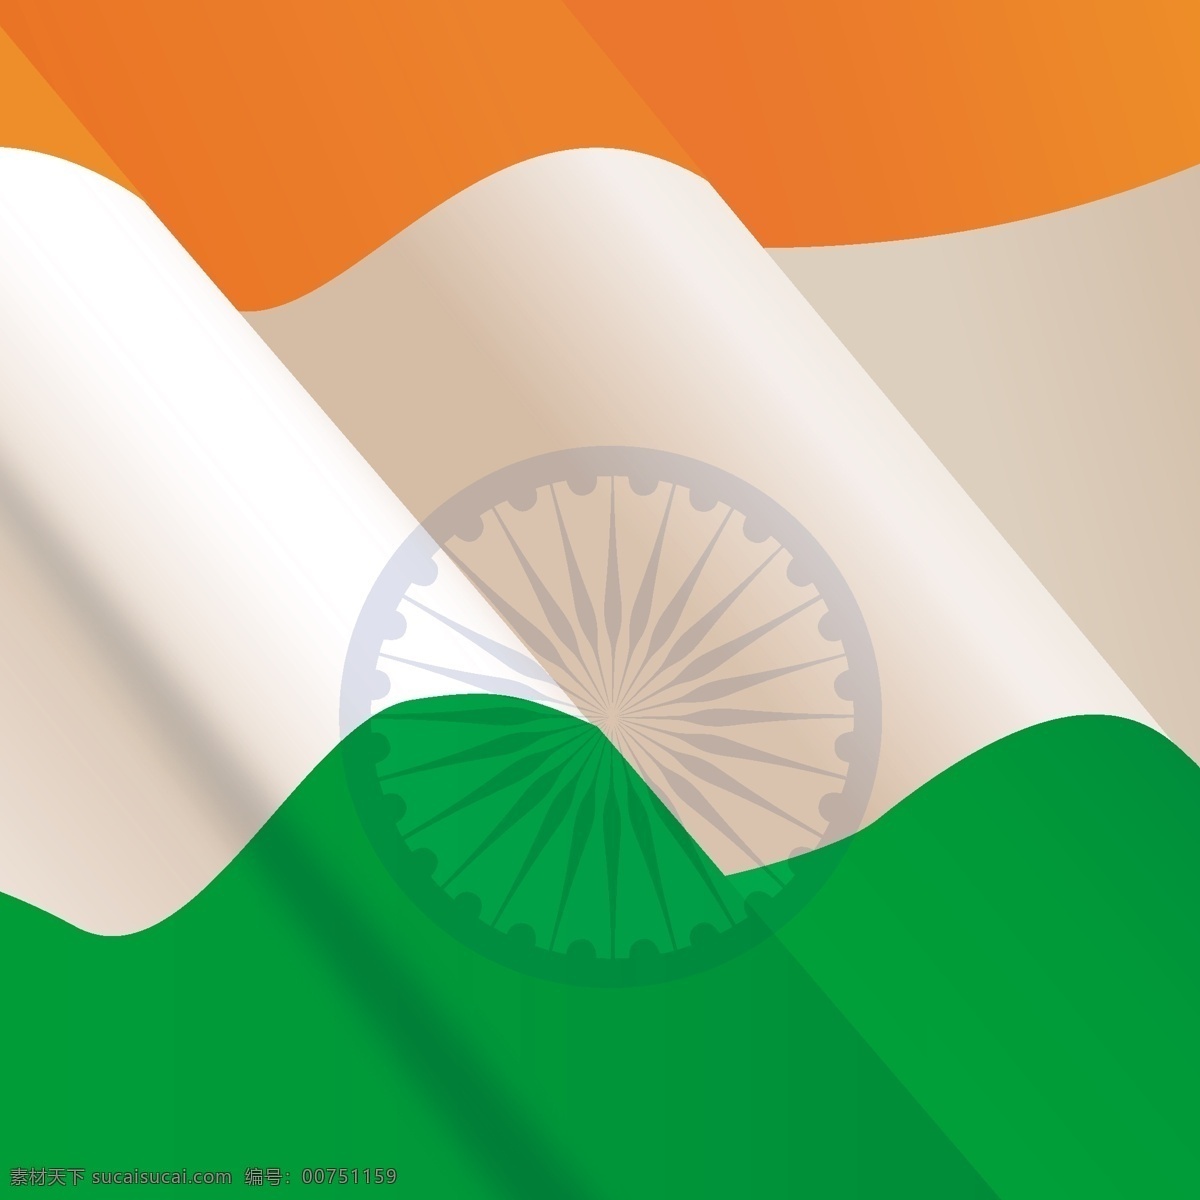 波浪式 印度 国旗 背景 旗帜 节日 和平 国家 自由 波浪 爱国 一月 独立 脉轮 民主 民族 共和国 宪法 爱国主义 橙色